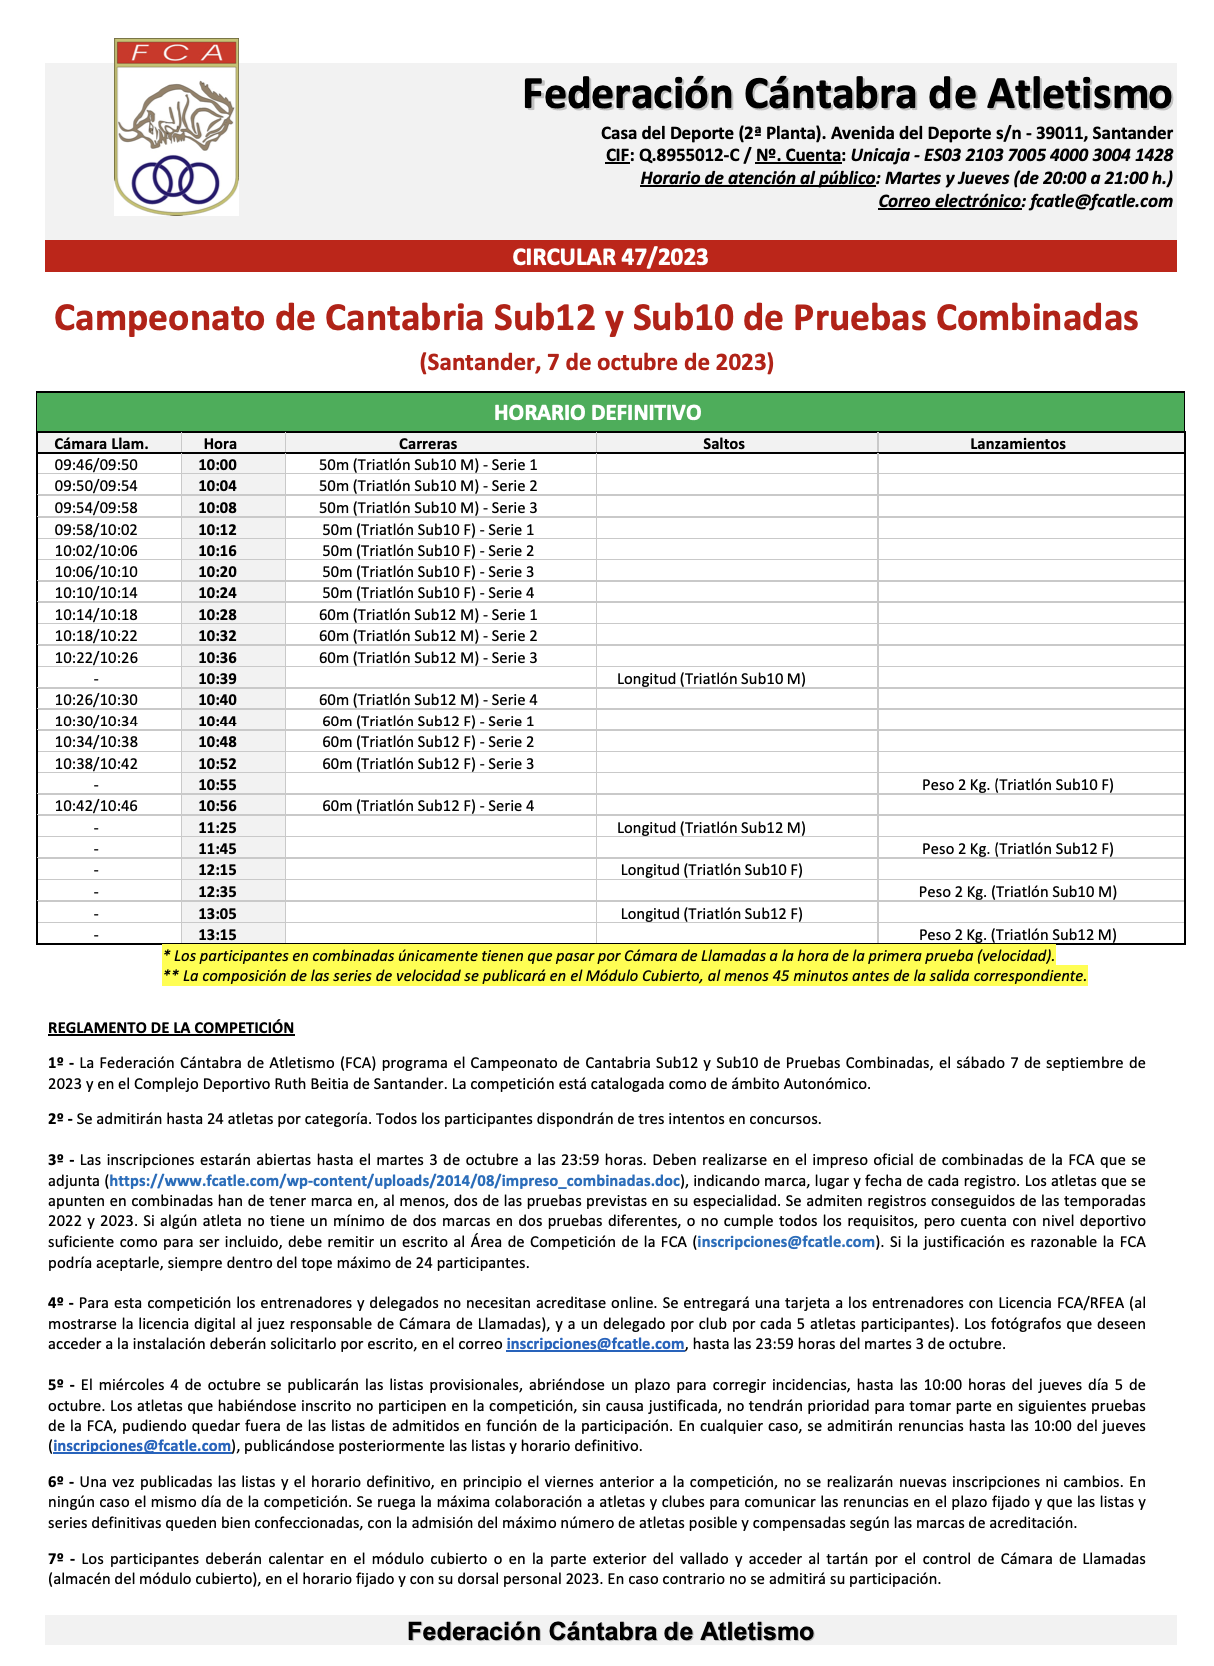 Campeonato de Cantabria Sub12 y Sub10 de Pruebas Combinadas @ Santander, Cantabria